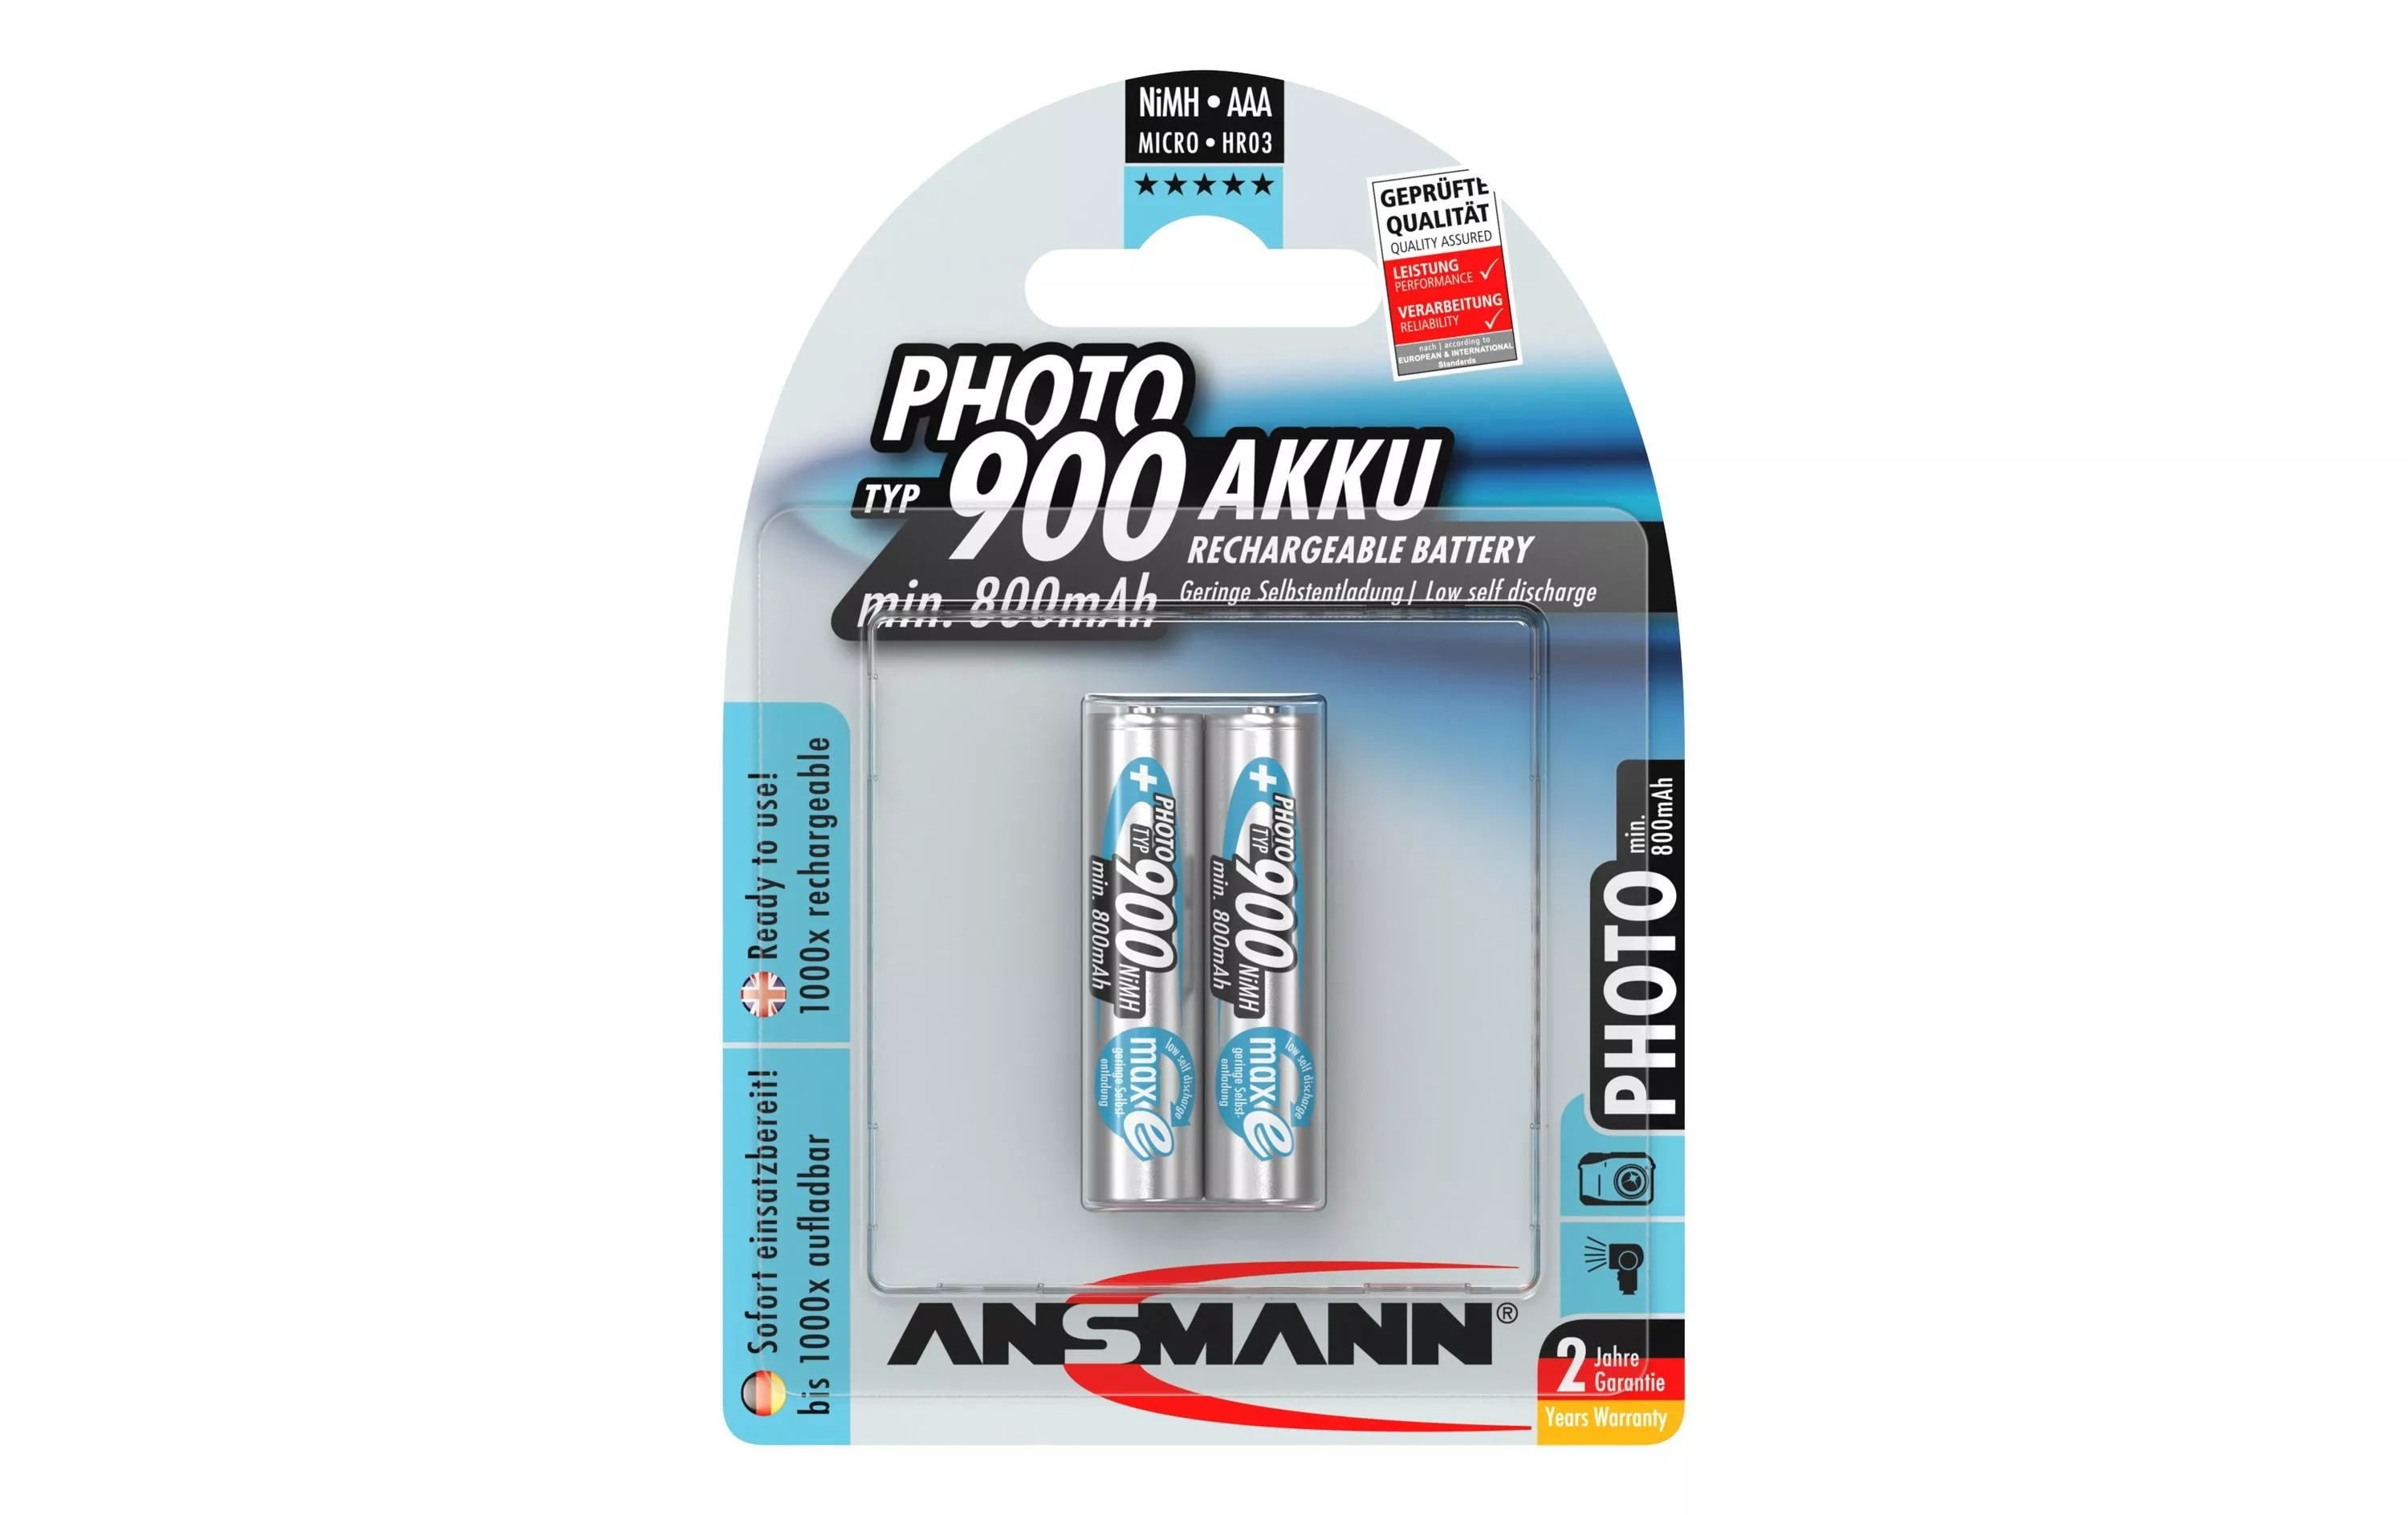 Akku 2x AAA Typ 900 800 mAh für Digitalkameras, usw.